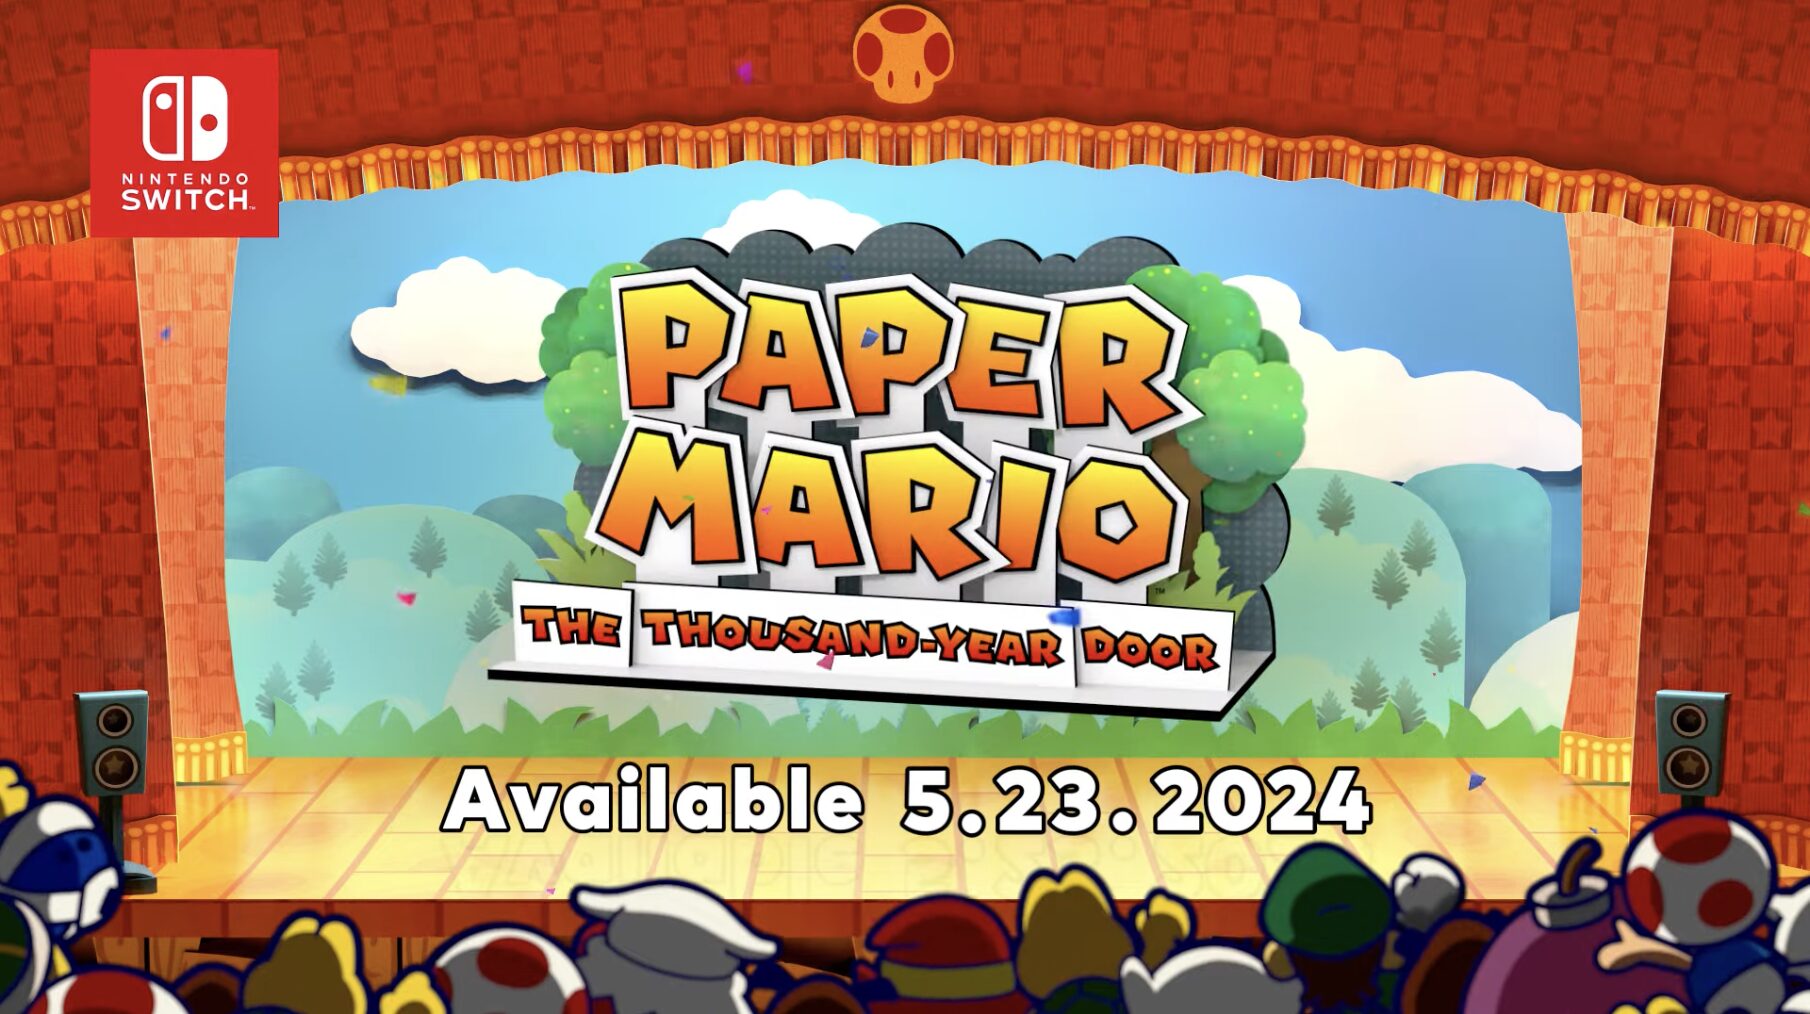 Paper Mario The ThousandYear Door Releasing on May 23